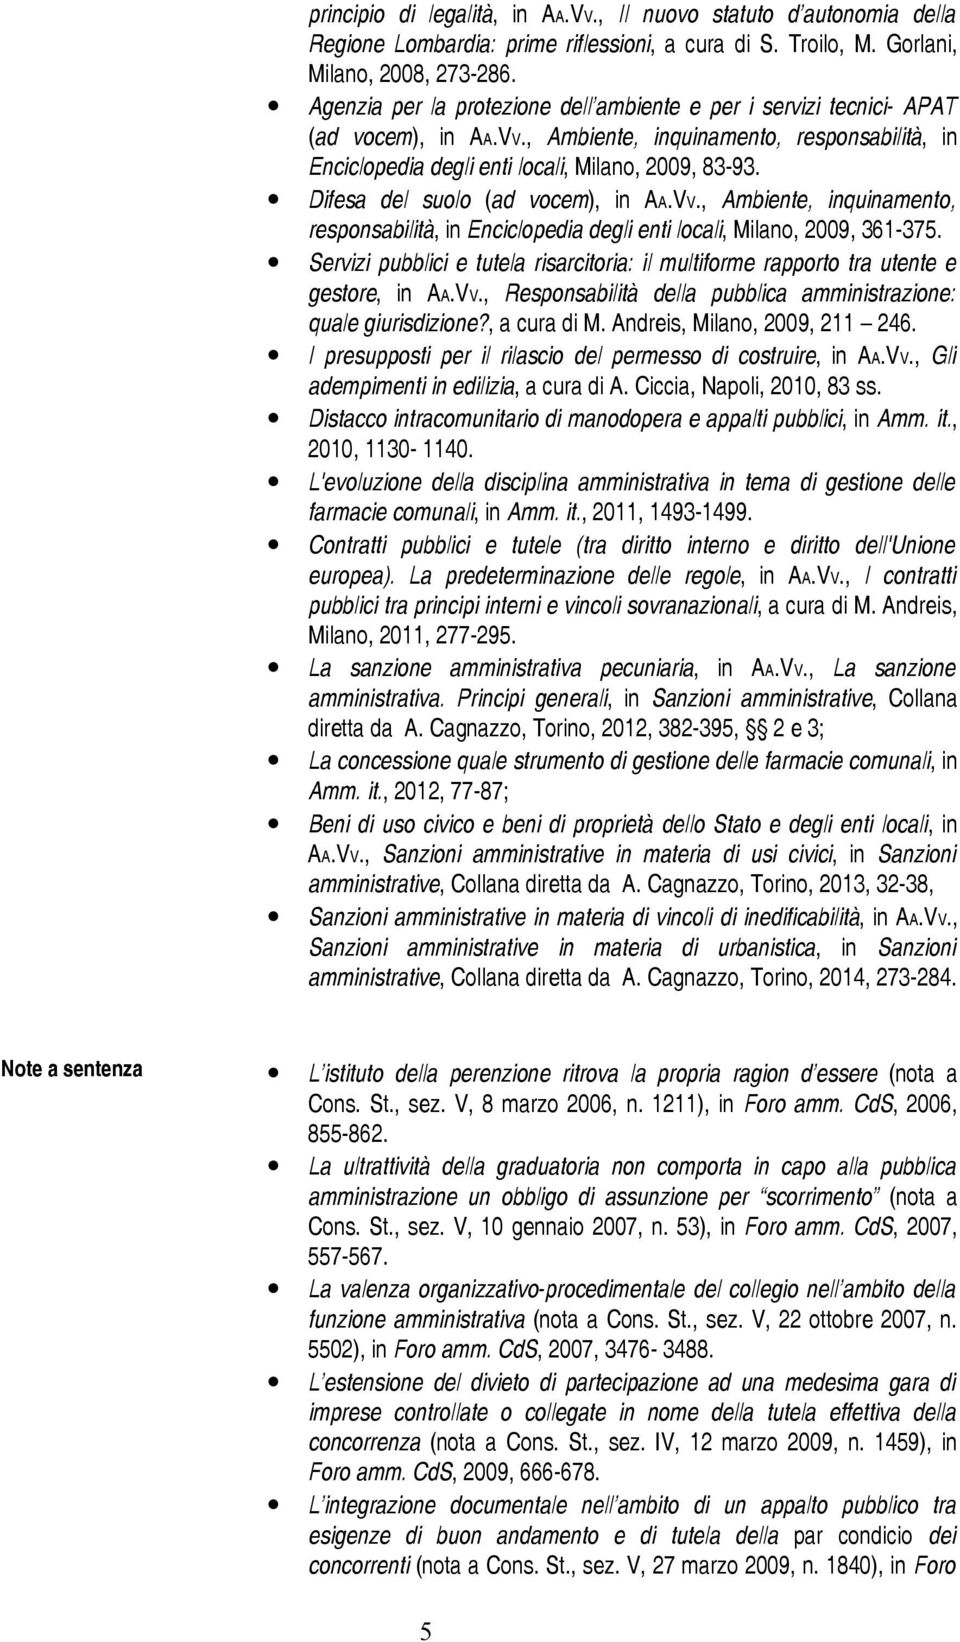 Difesa del suolo (ad vocem), in AA.VV., Ambiente, inquinamento, responsabilità, in Enciclopedia degli enti locali, Milano, 2009, 361-375.